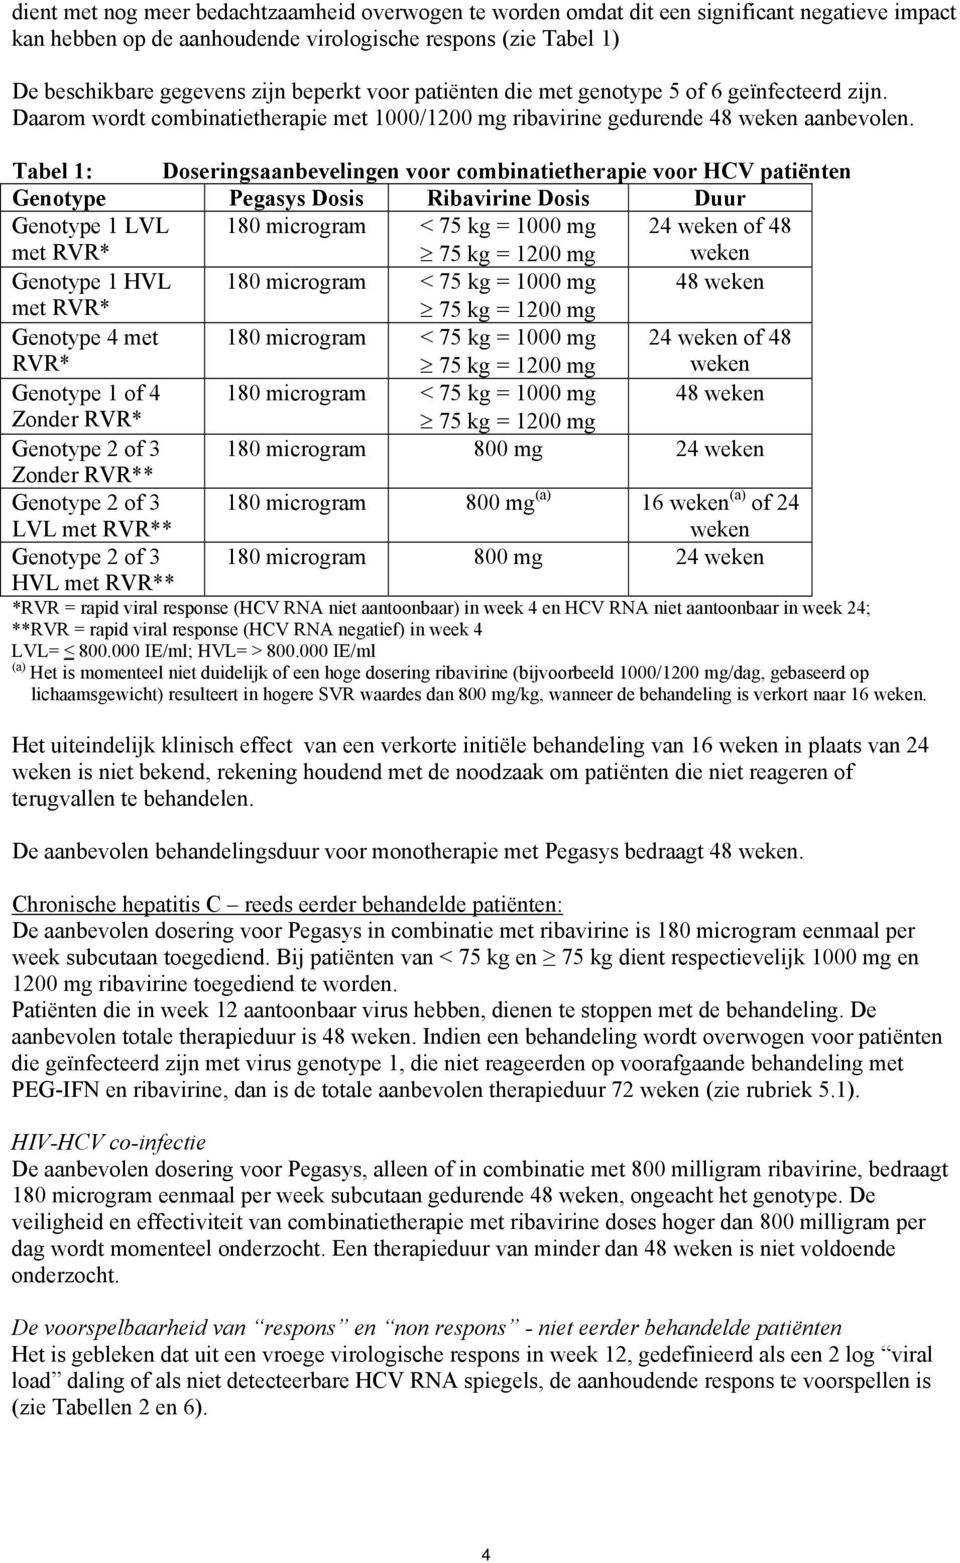 Tabel 1: Doseringsaanbevelingen voor combinatietherapie voor HCV patiënten Genotype Dosis Ribavirine Dosis Duur Genotype 1 LVL met RVR* 180 microgram < 75 kg = 1000 mg 75 kg = 1200 mg 24 weken of 48